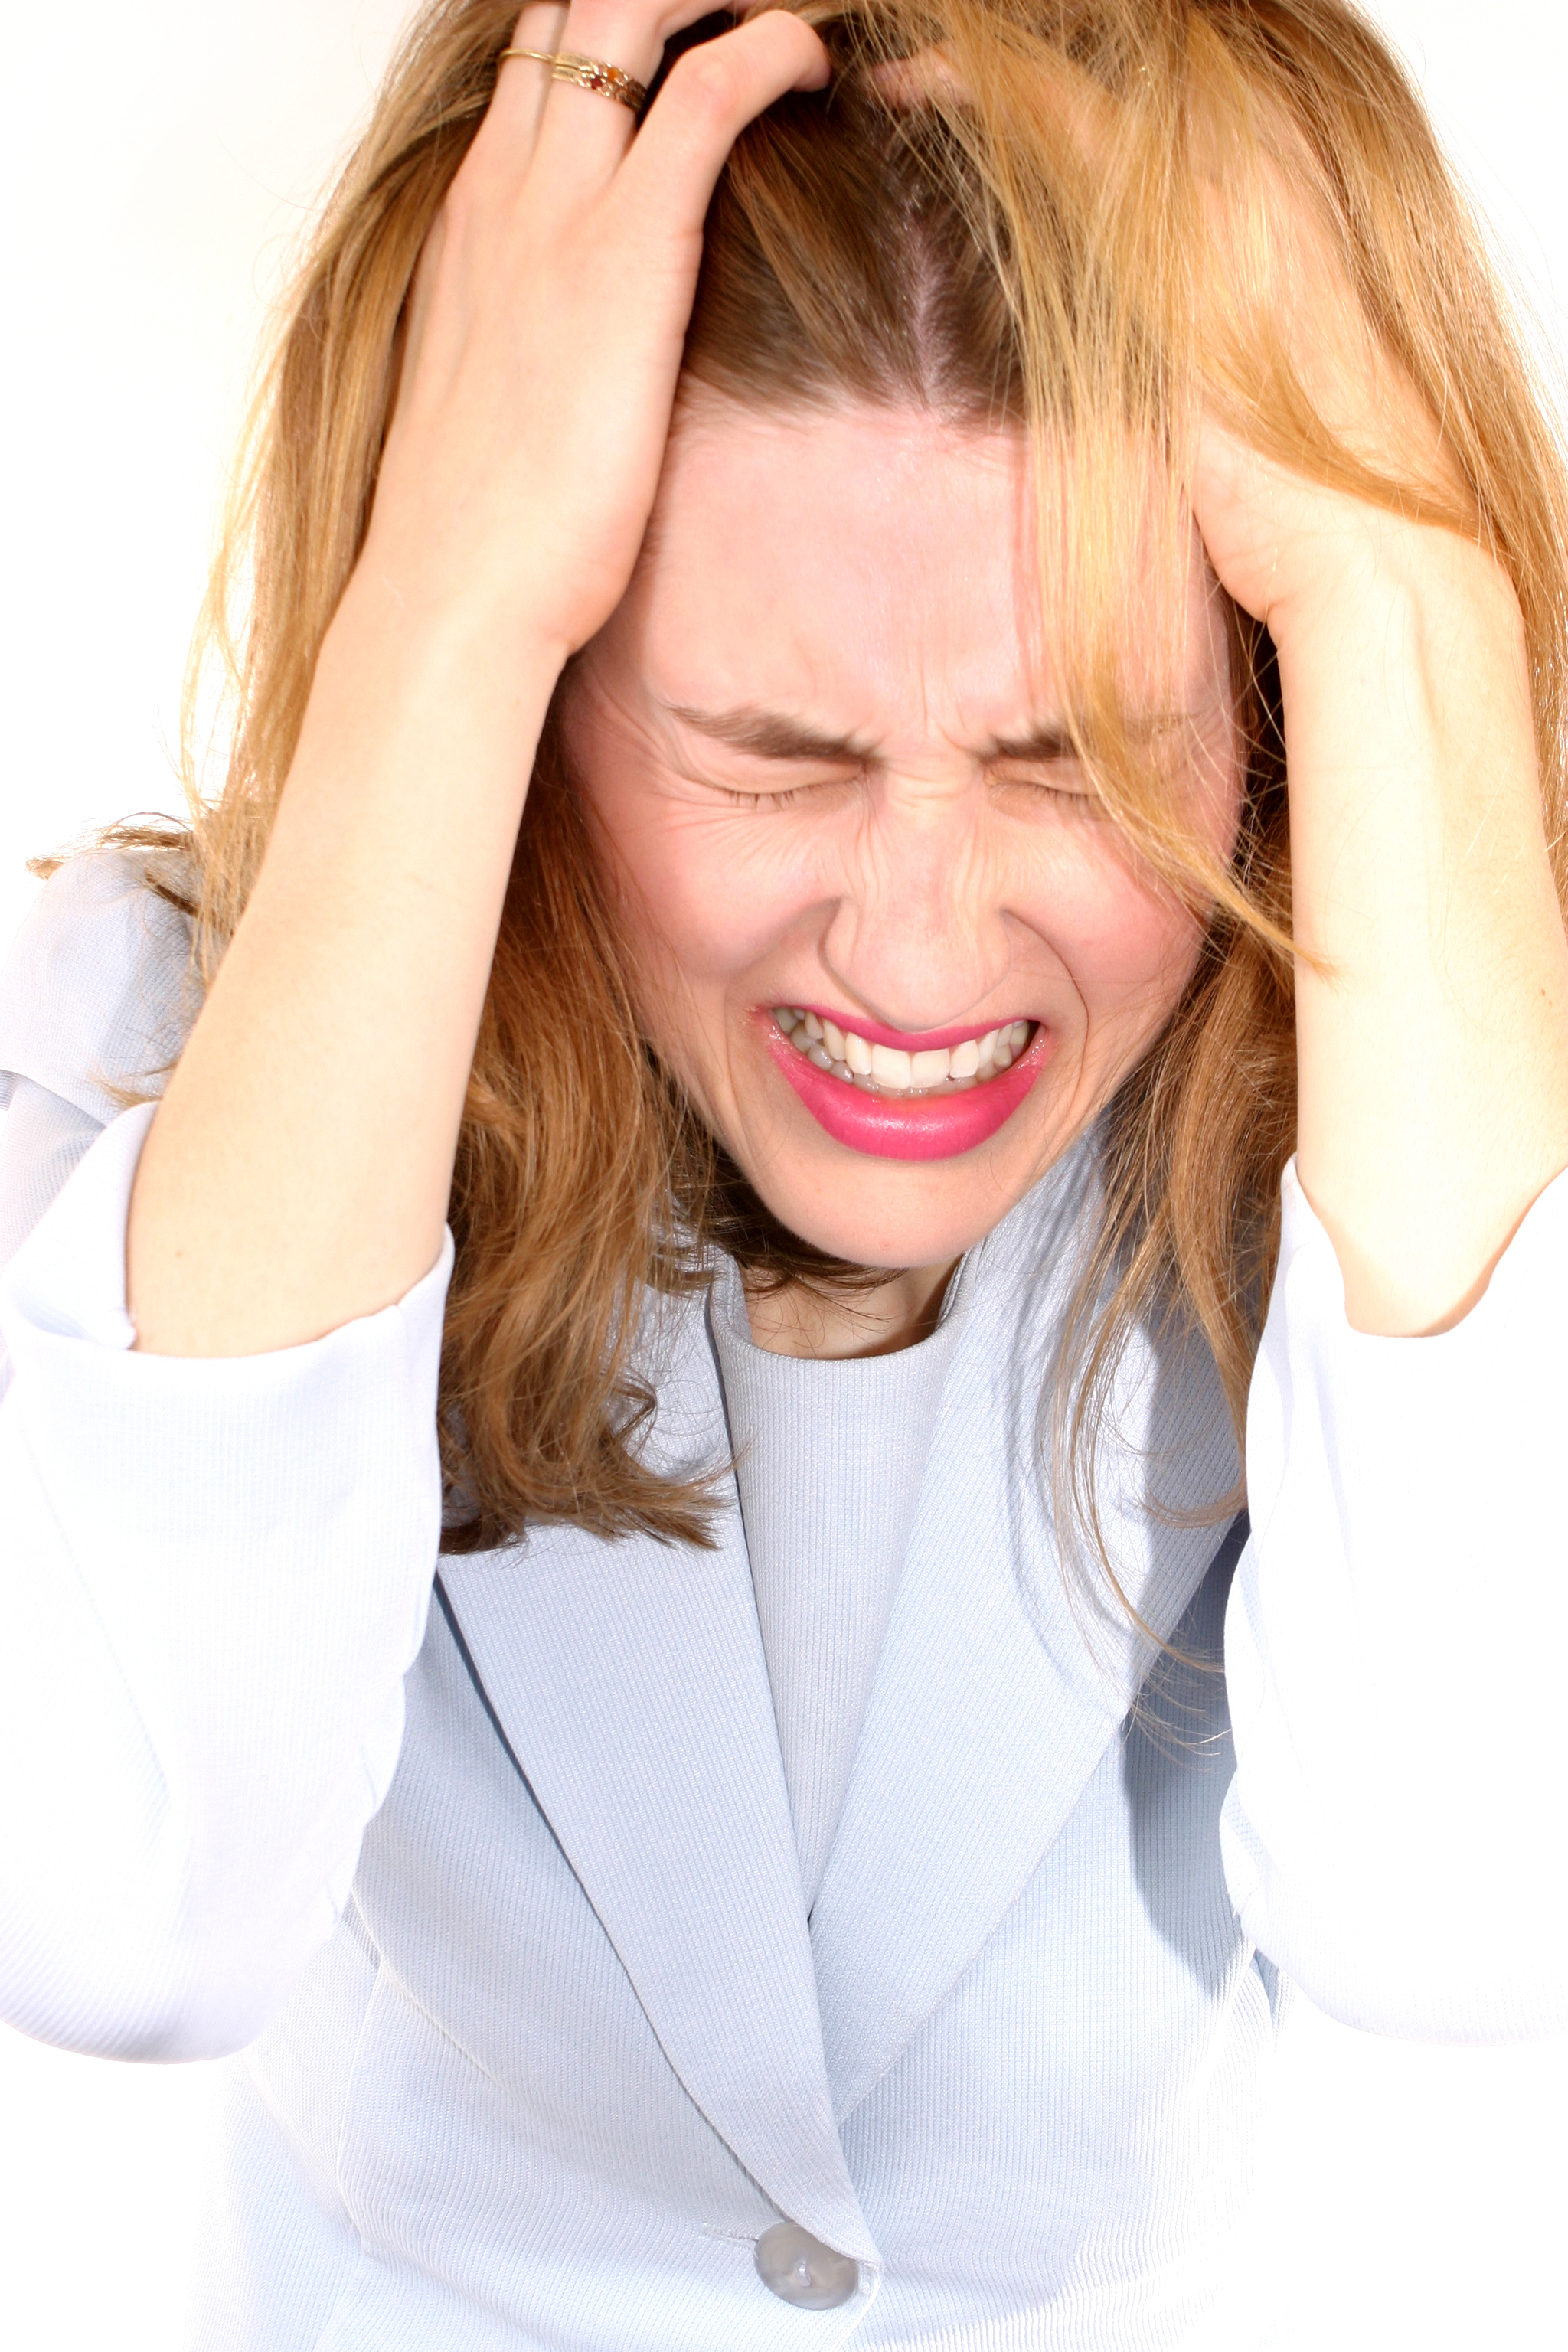 Femme faisant une crise de colère | Source : Getty Images